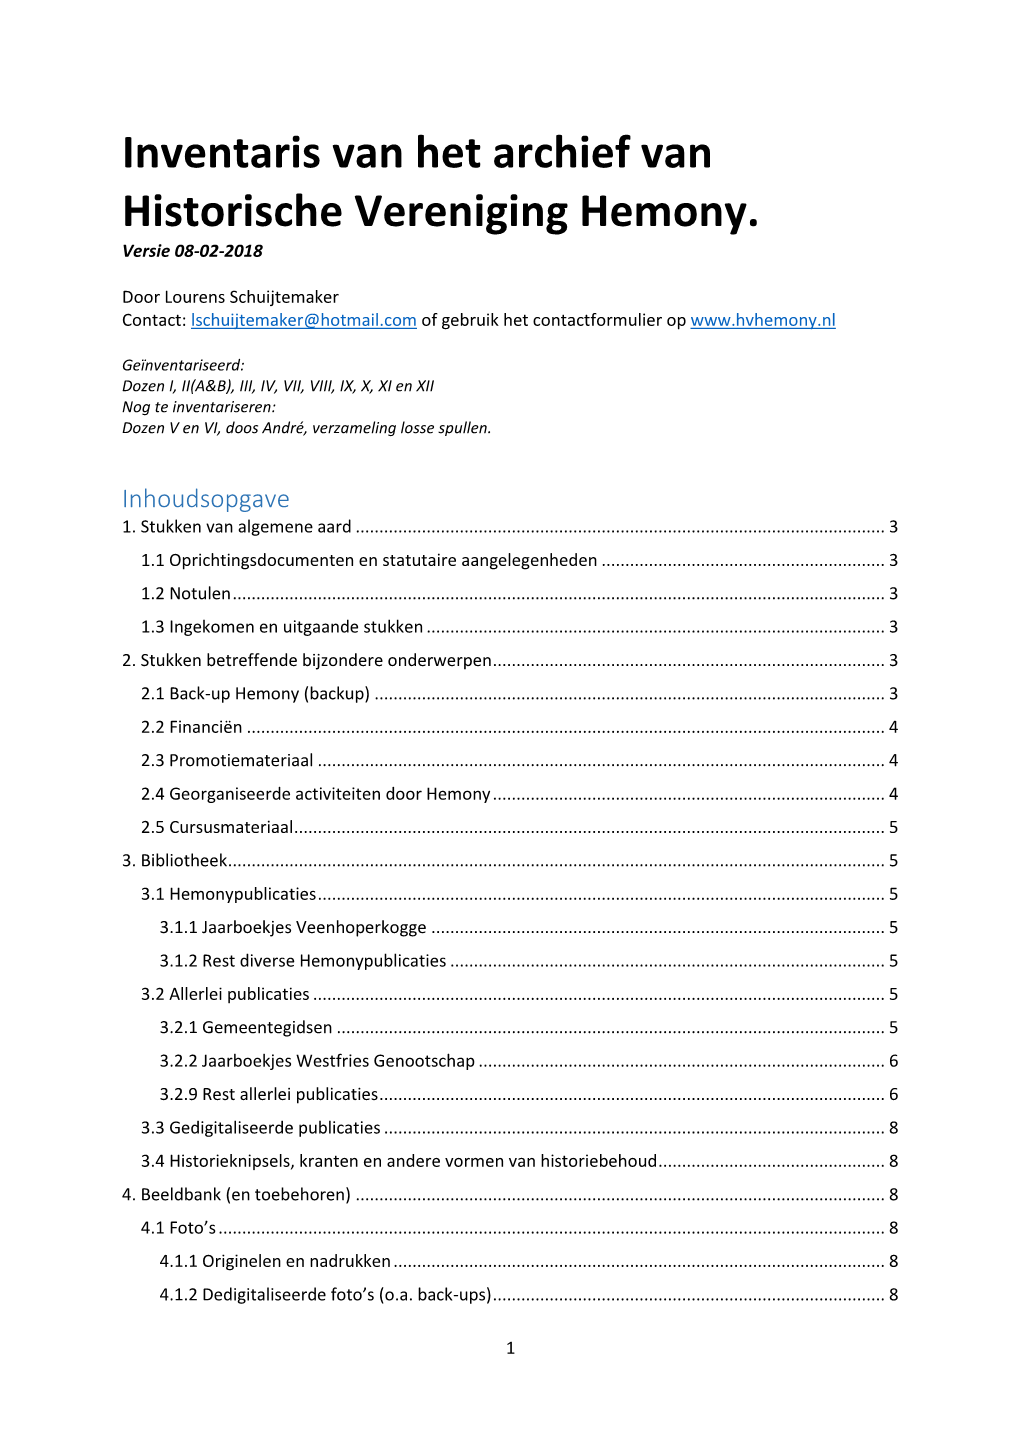 Inventaris Van Het Archief Van Historische Vereniging Hemony. Versie 08-02-2018